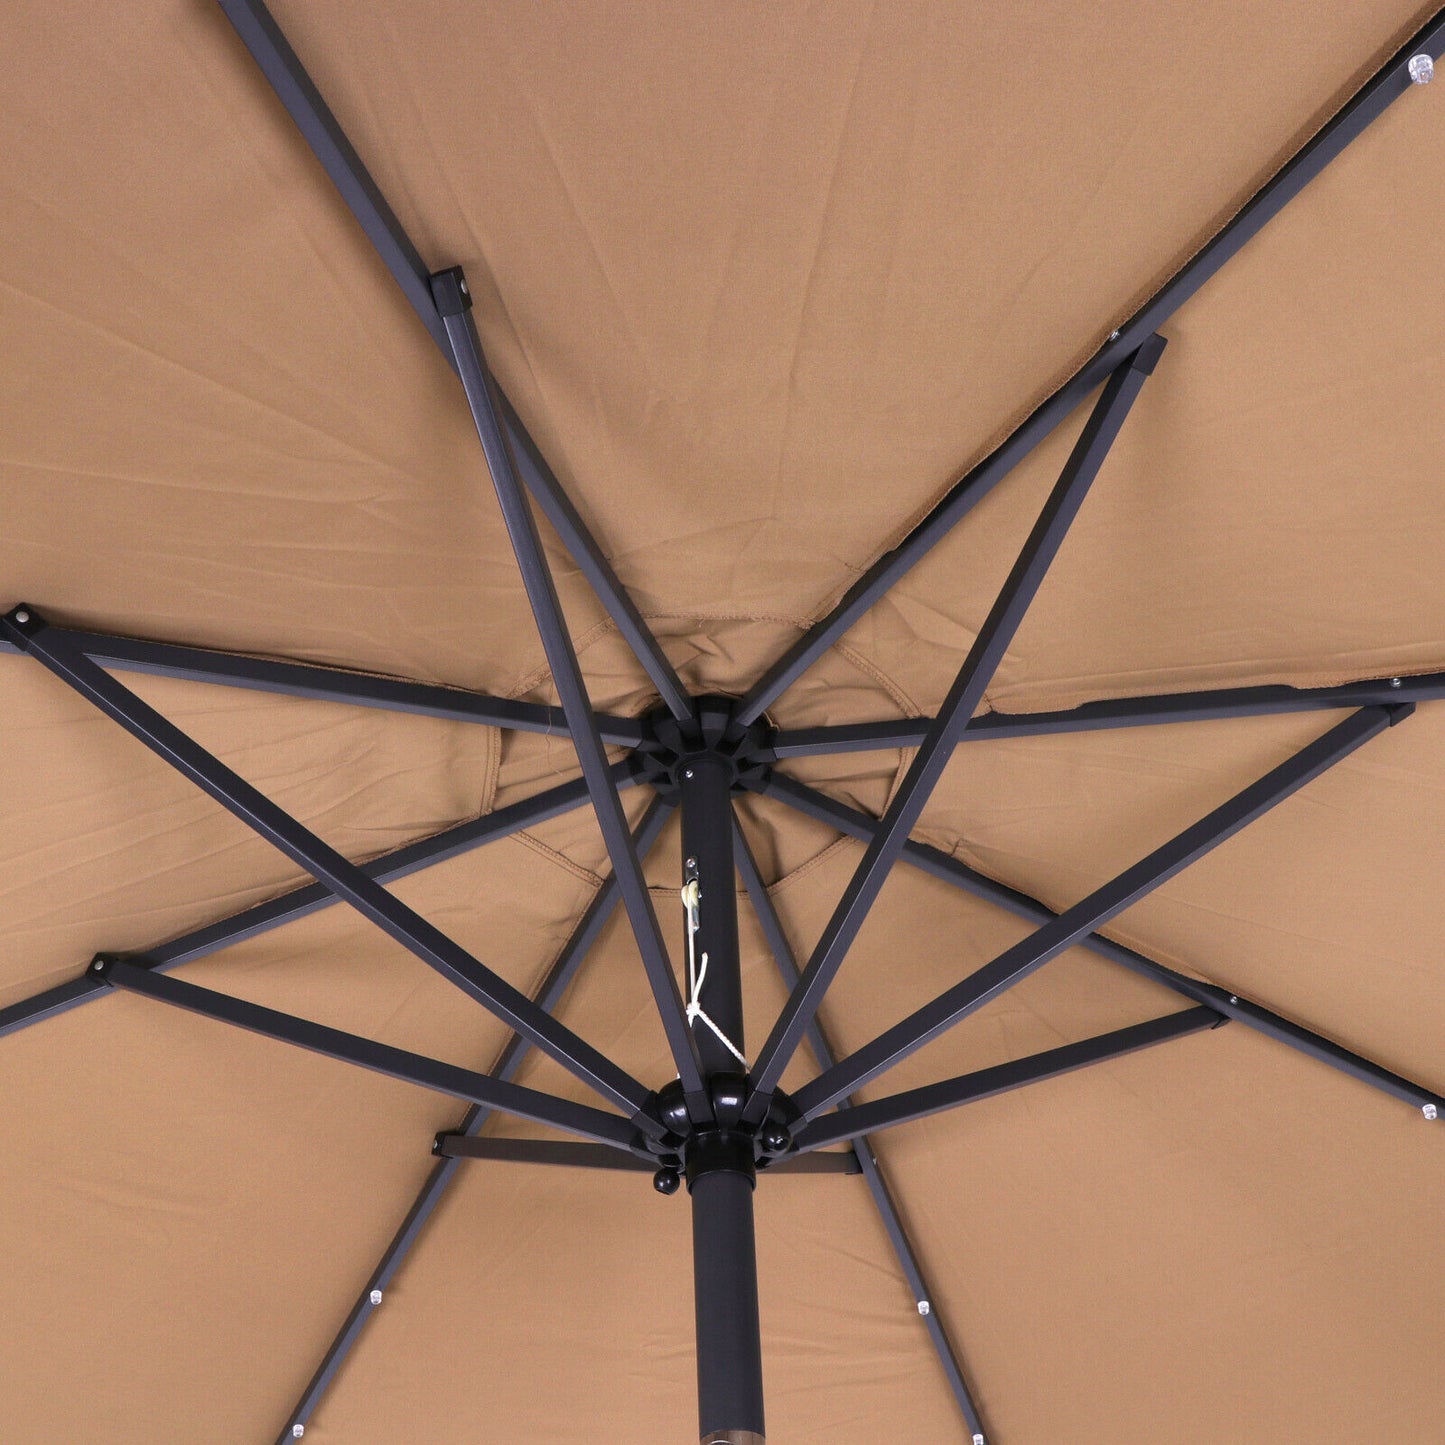 10 FT Solar Powered Patio Umbrella 32LED Lights Solar Umbrella w/ Tilt and Crank